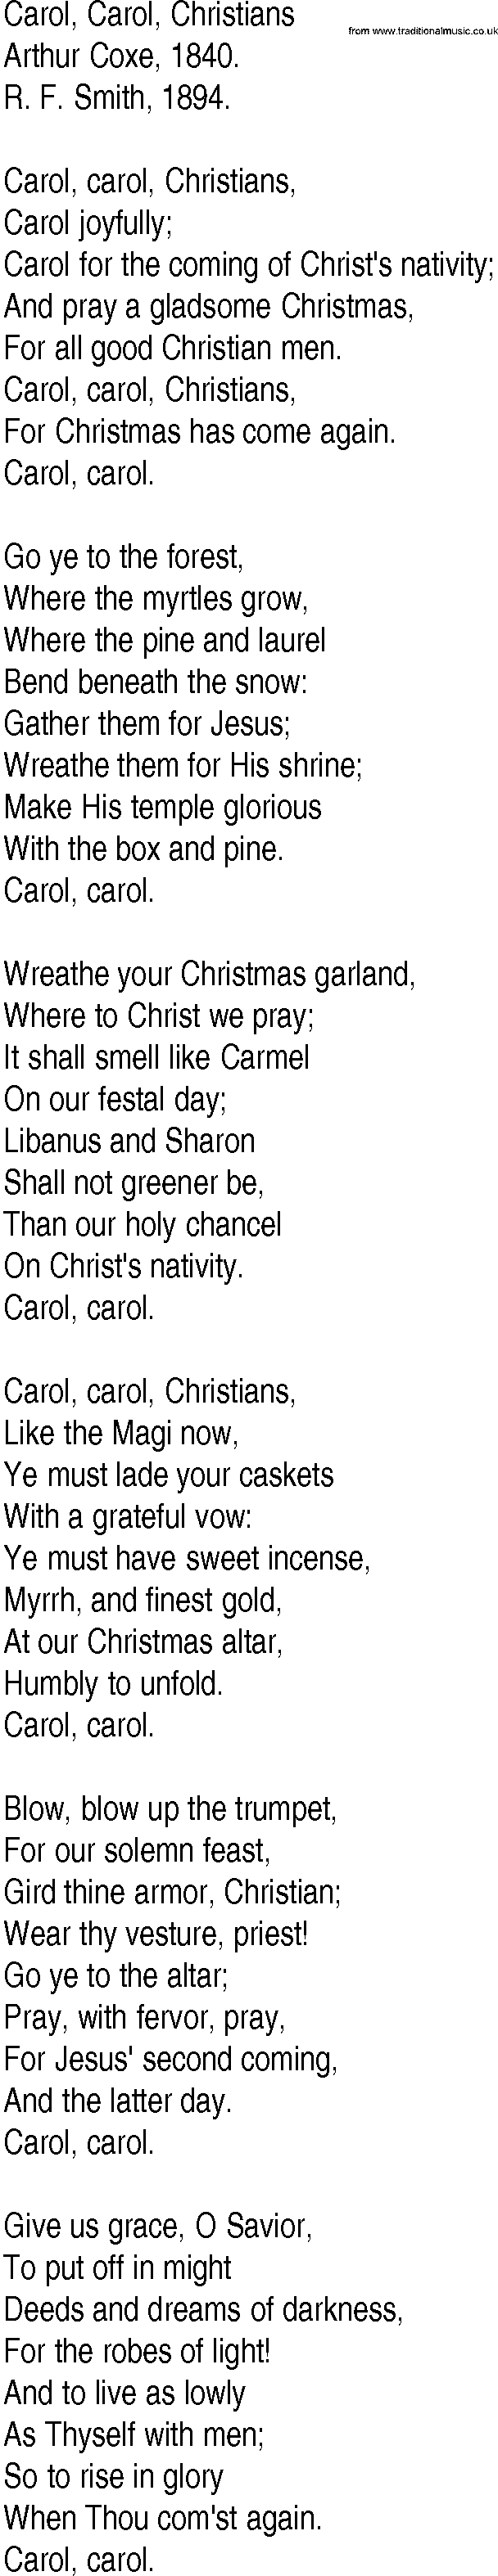 Hymn and Gospel Song: Carol, Carol, Christians by Arthur Coxe lyrics